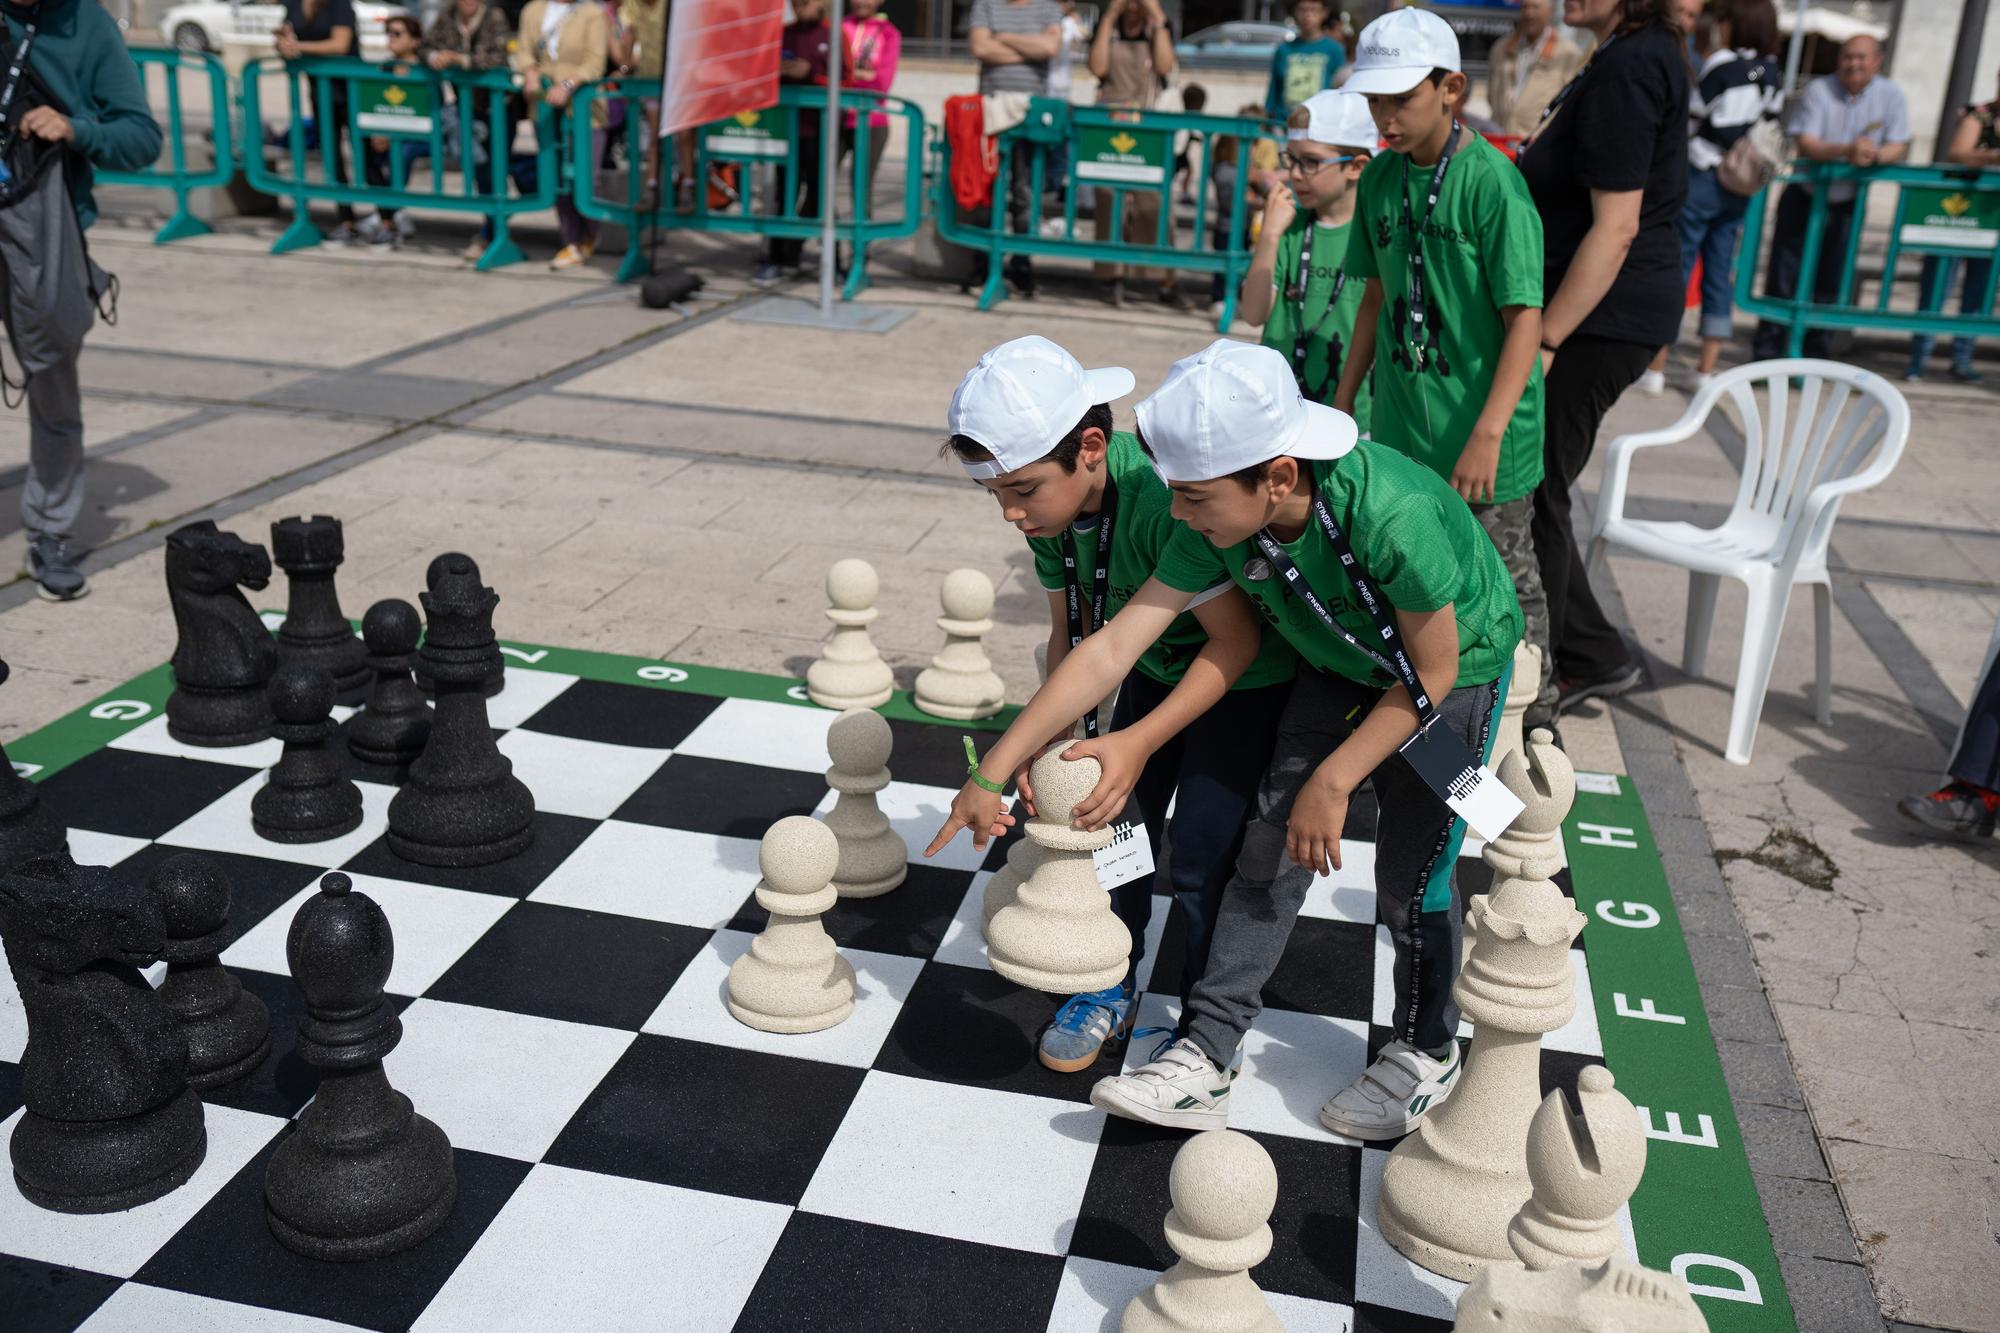 Los pequeños gigantes del ajedrez mueven ficha en Zamora